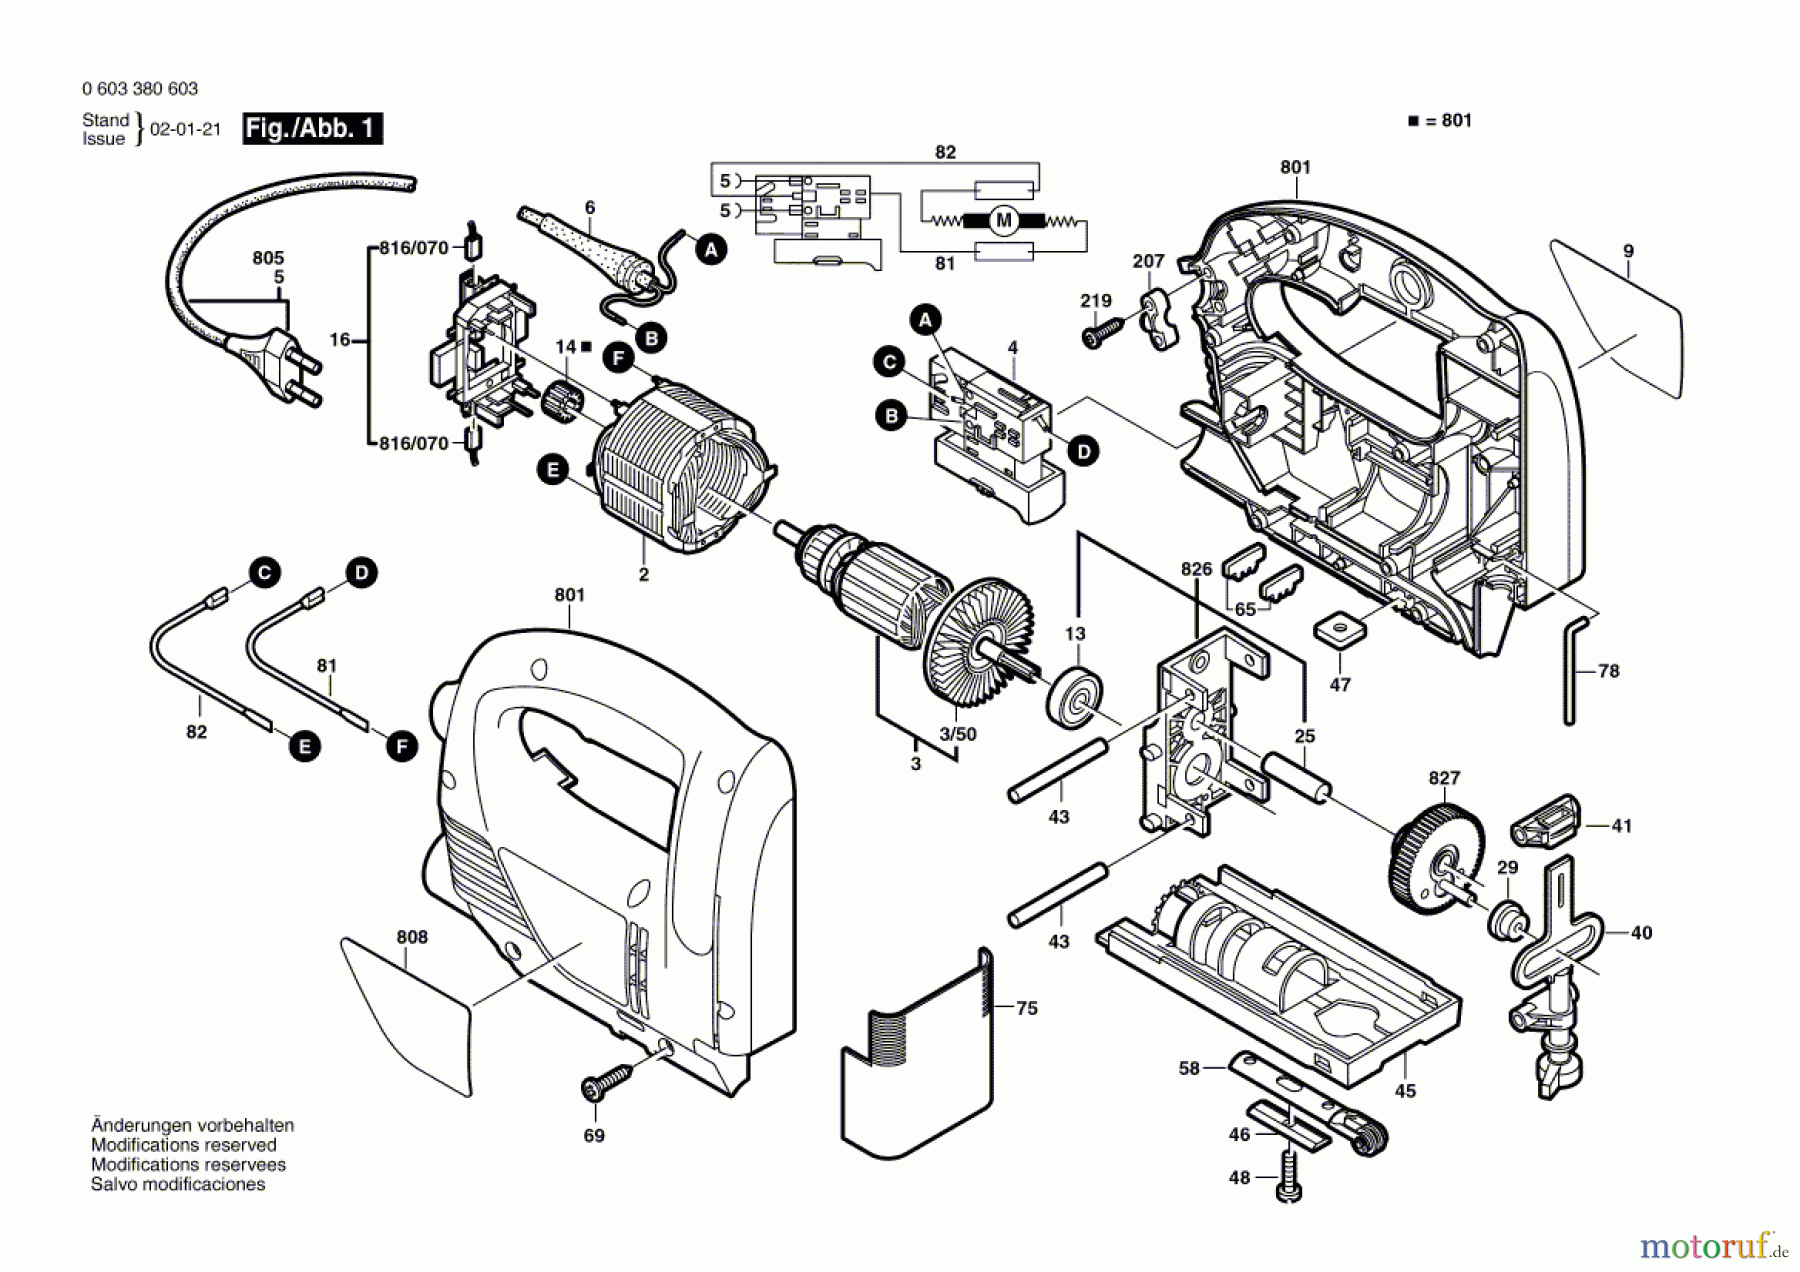  Bosch Werkzeug Stichsäge PST 650 E Seite 1